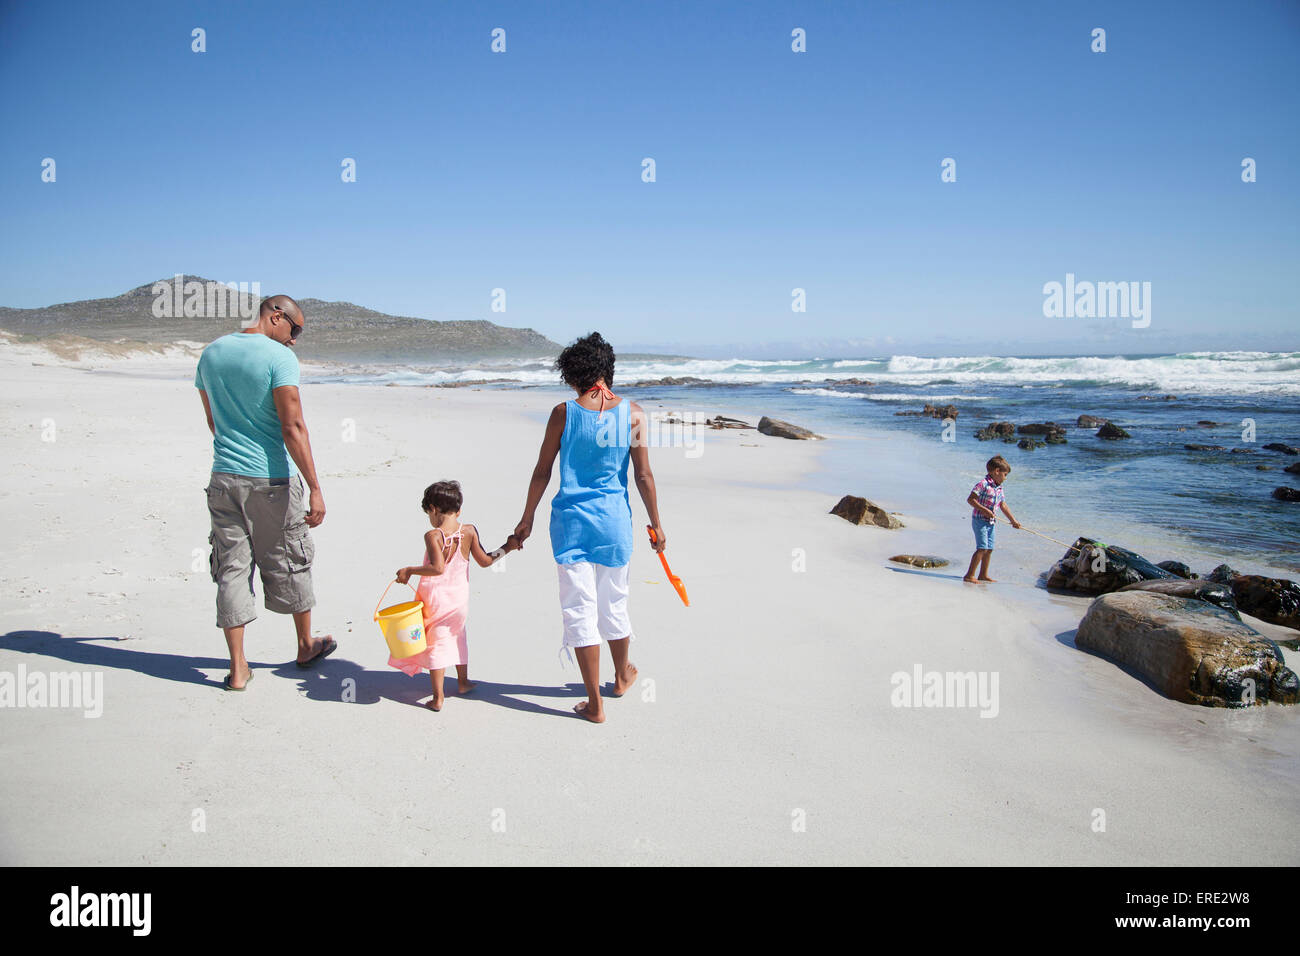 Mixed race family walking on beach Stock Photo